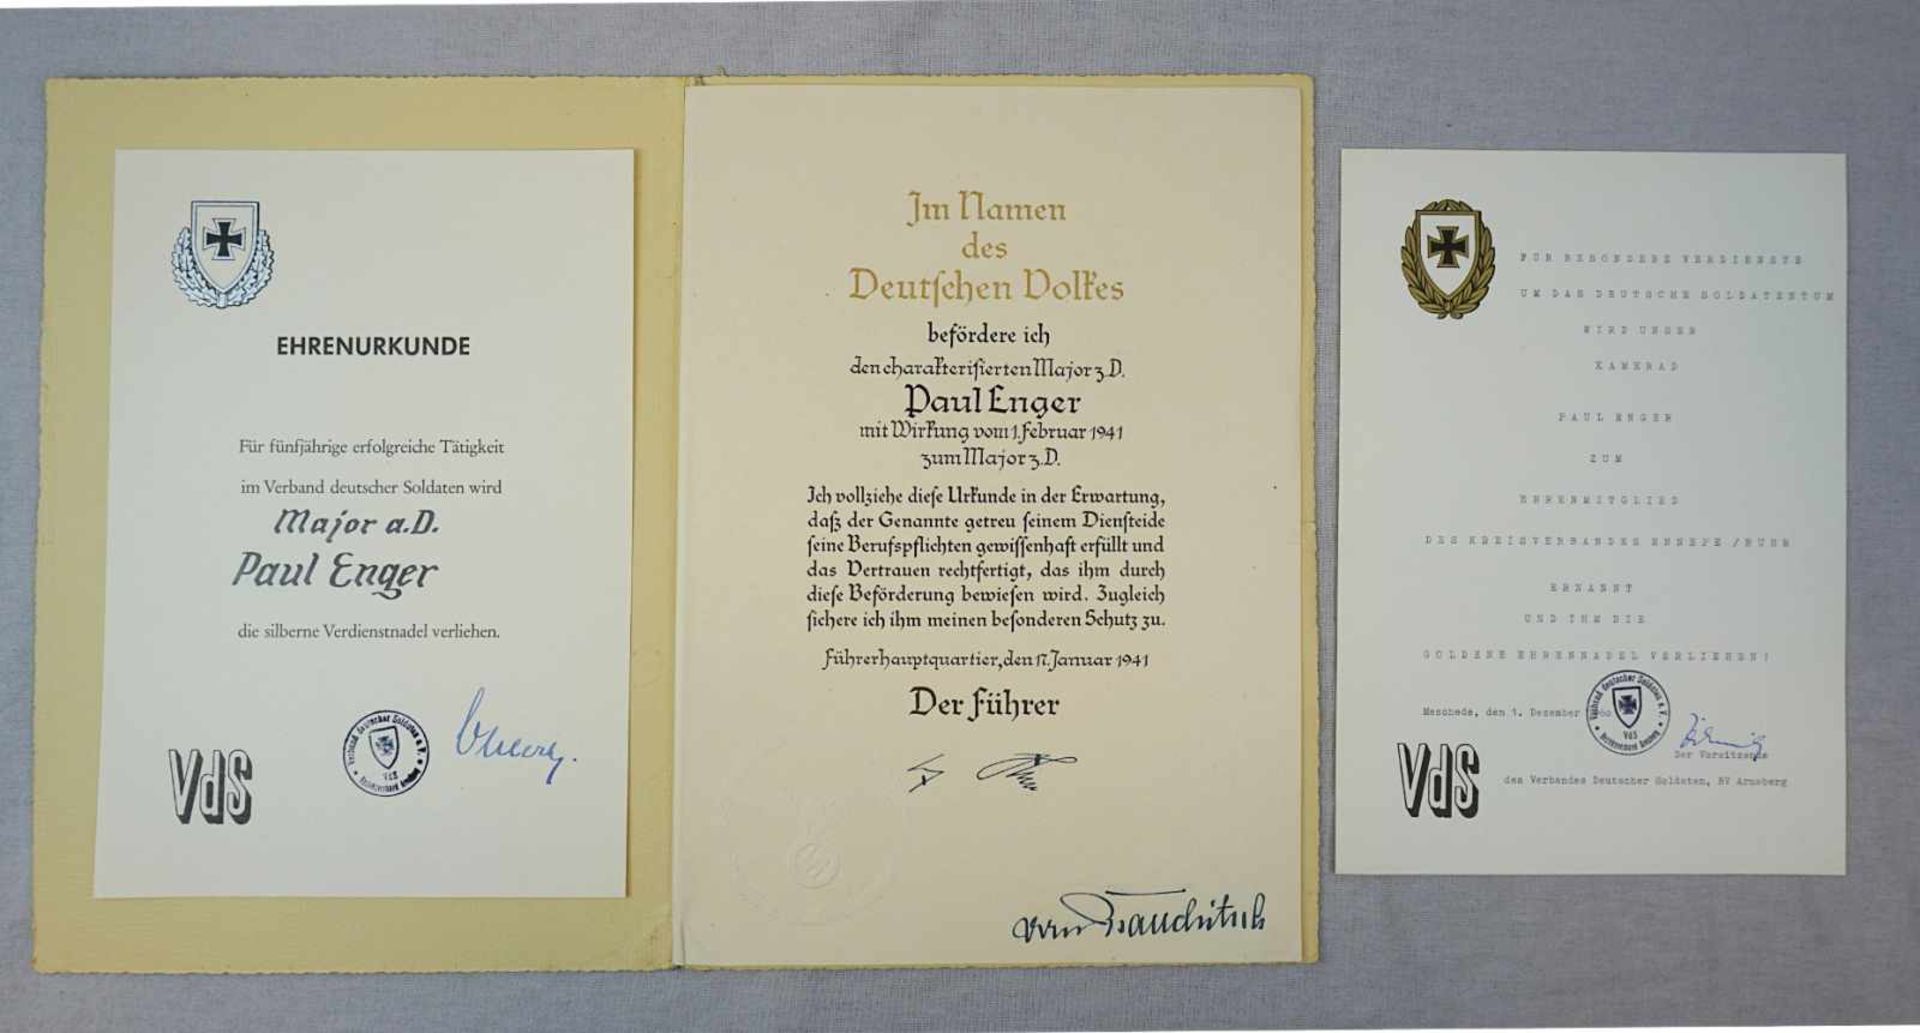 1 Konv. Dokumente/Urkunden 3. Reich u.a.:"Beförderung zum Major z.D." dat. 1941 mit Unterschrift u.